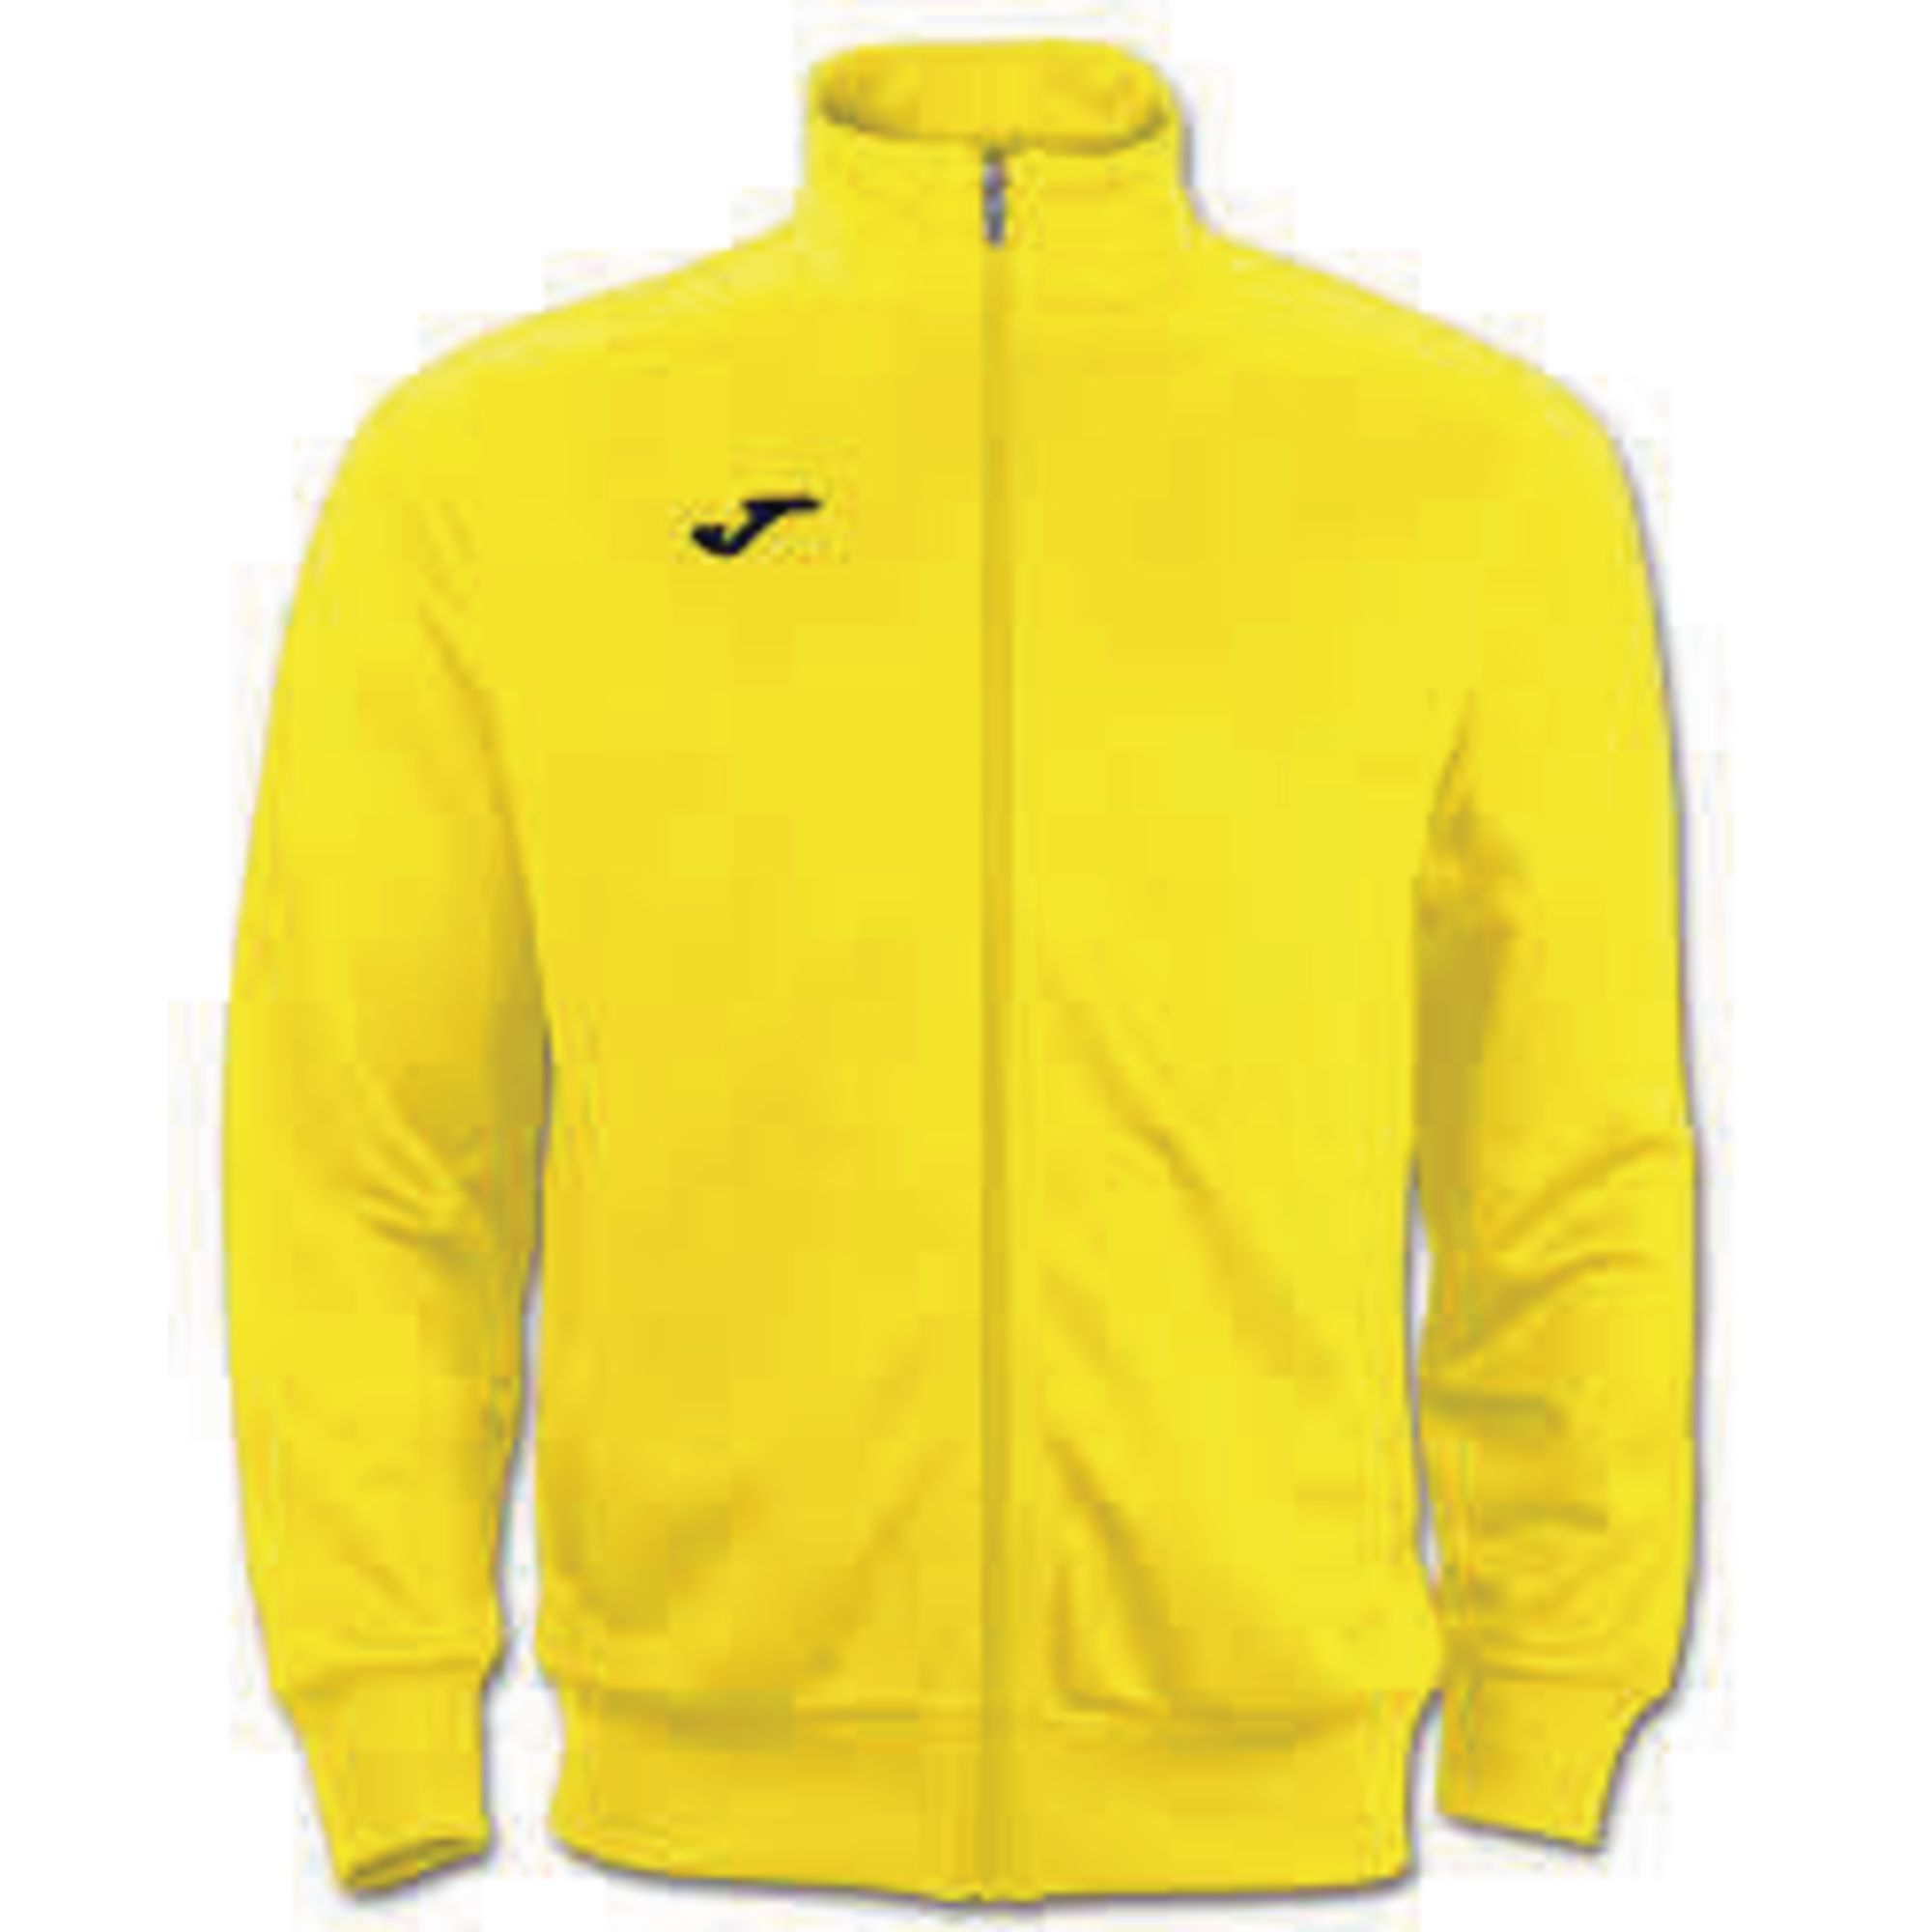 yellow tracksuit jacket